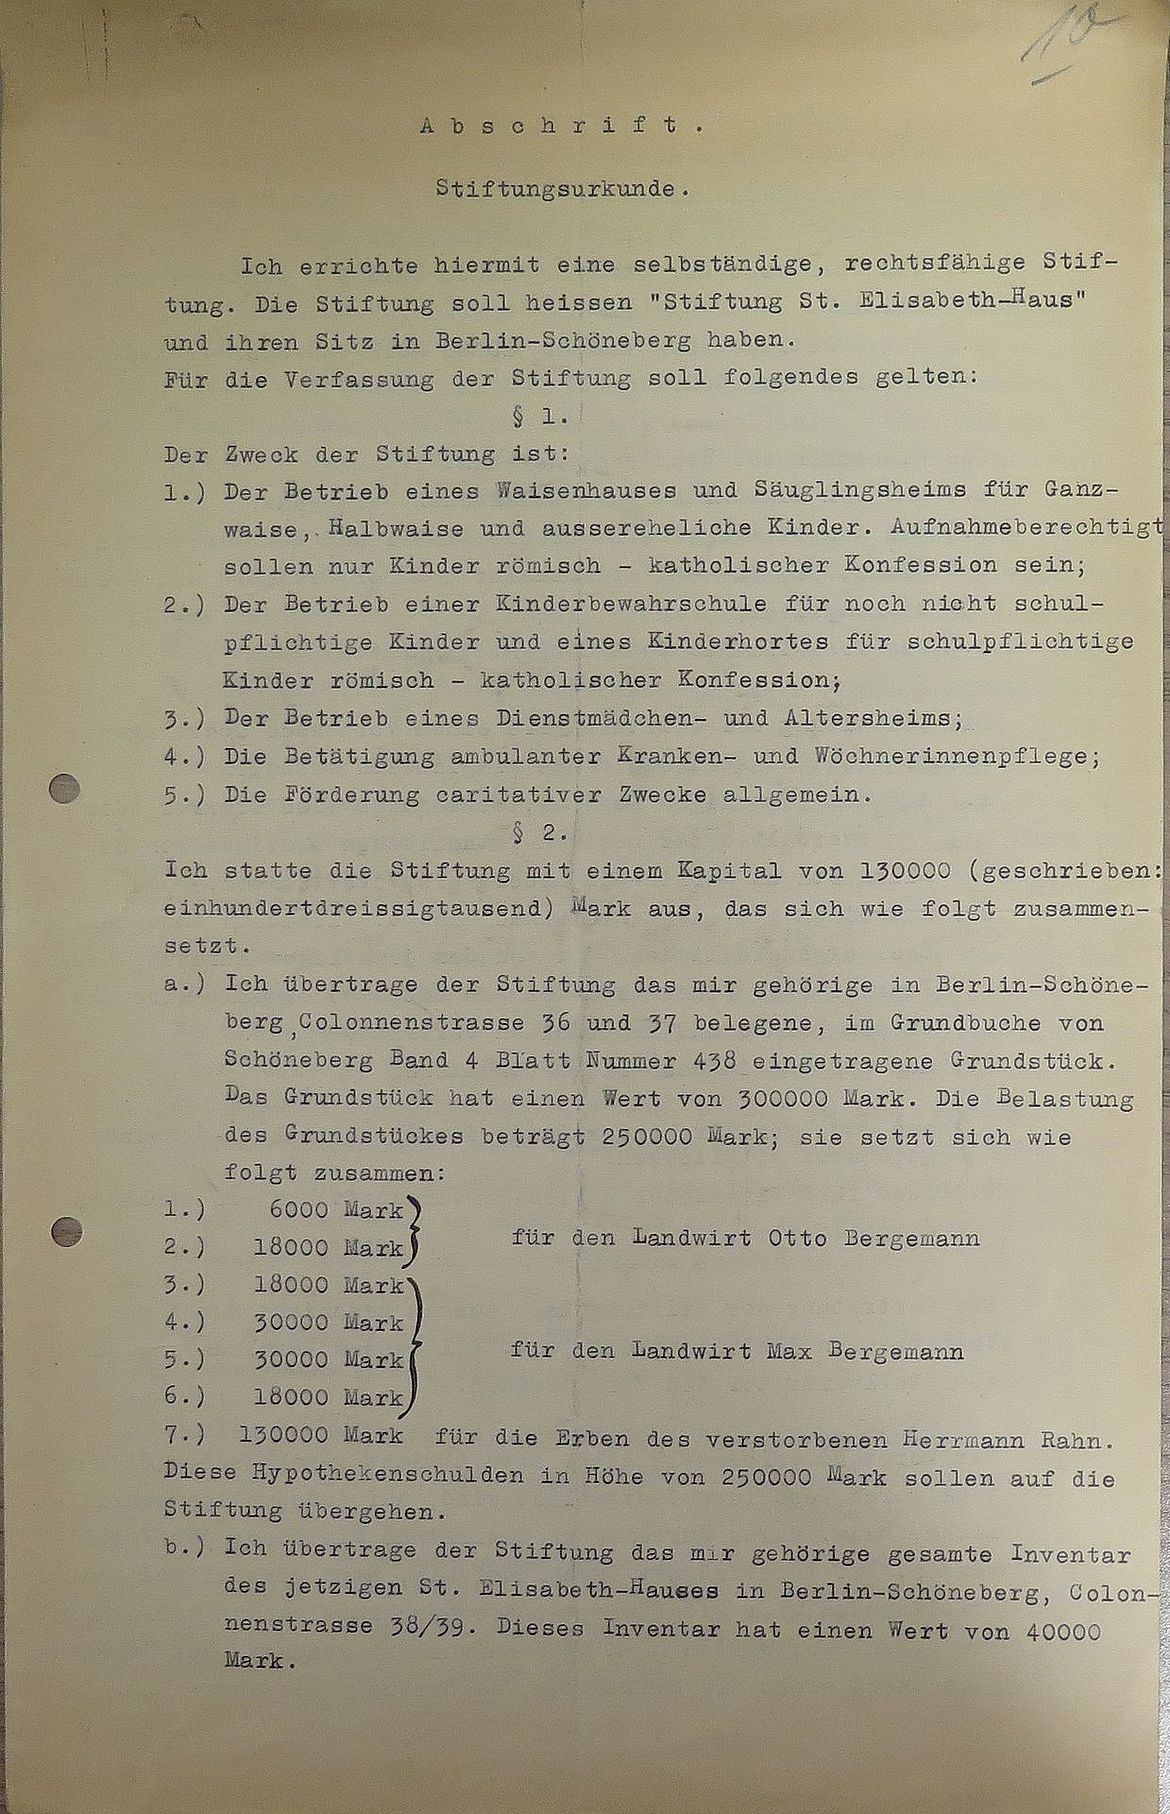 Abschrift S. 1 der Stiftungsurkunde von 1916